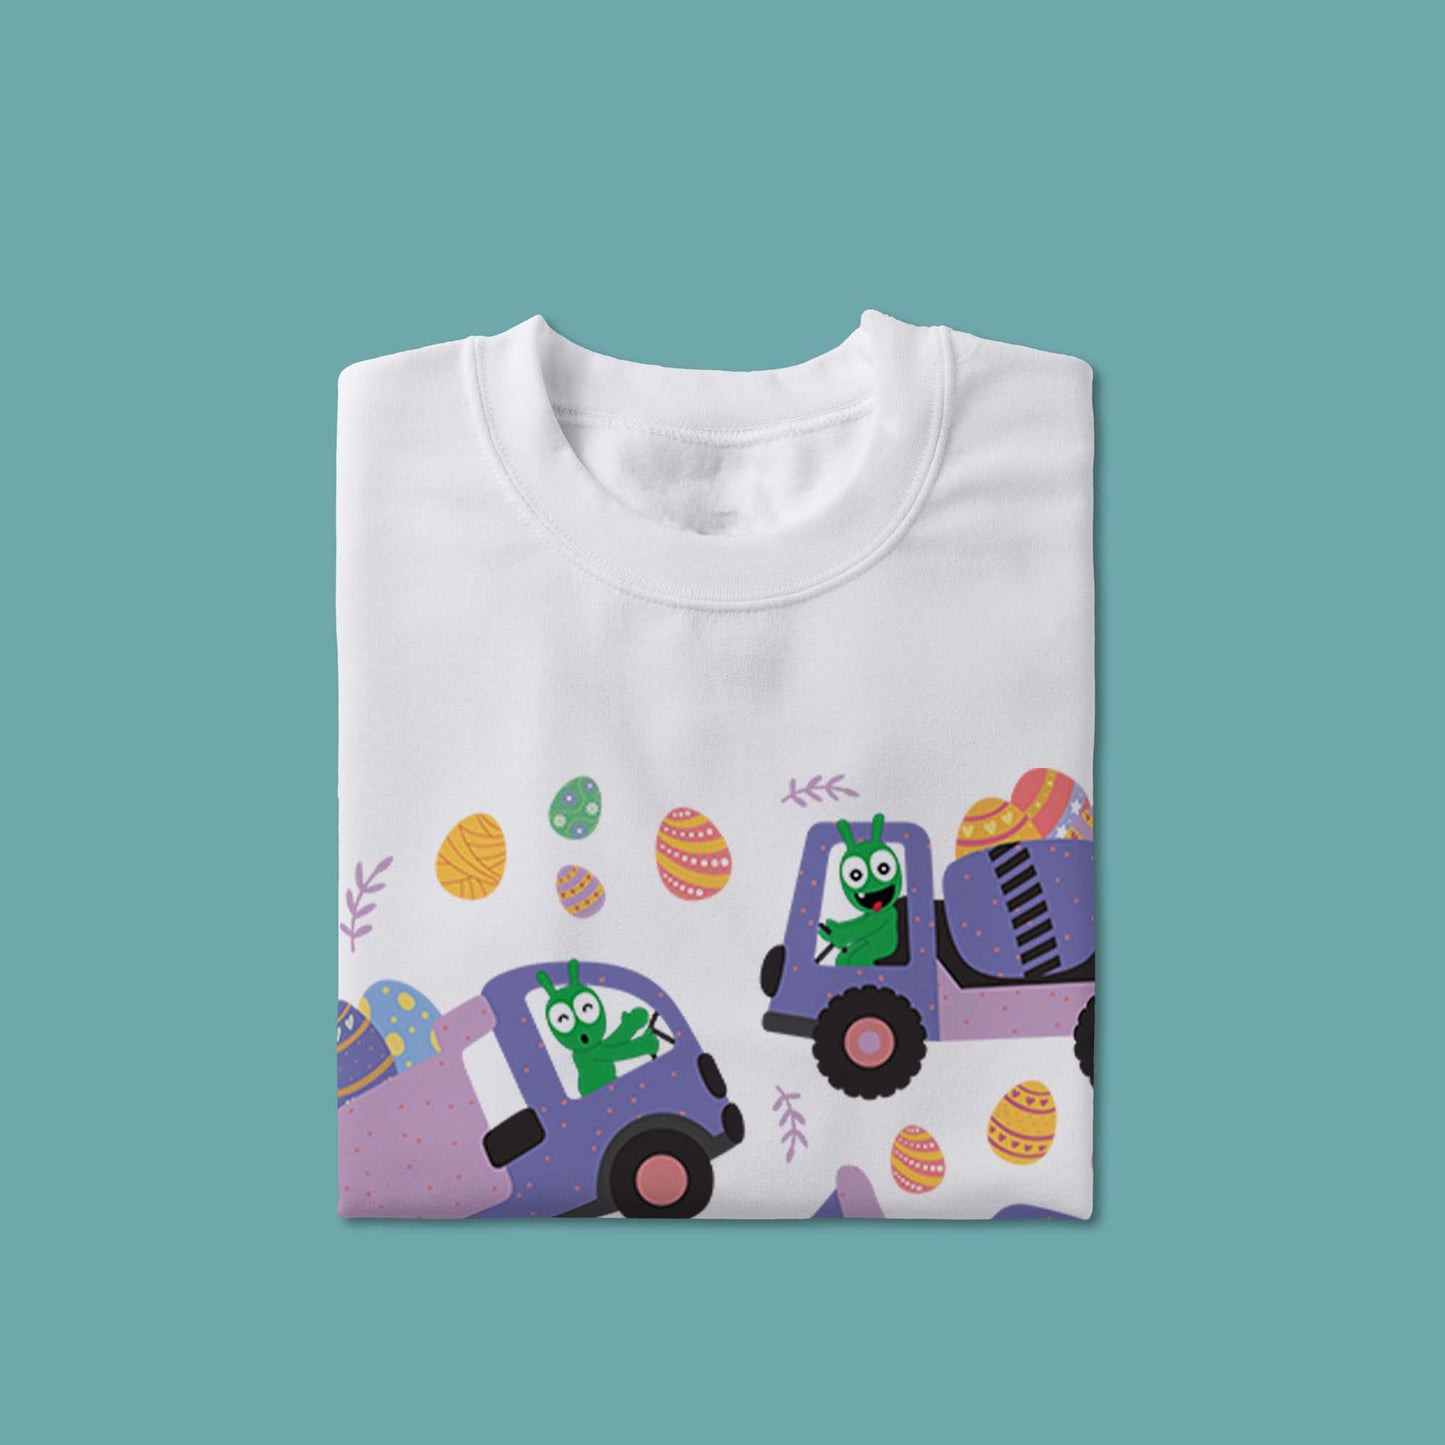 Pea Pea Sweeps huevos de Pascua con vehículos de construcción camiseta juvenil 